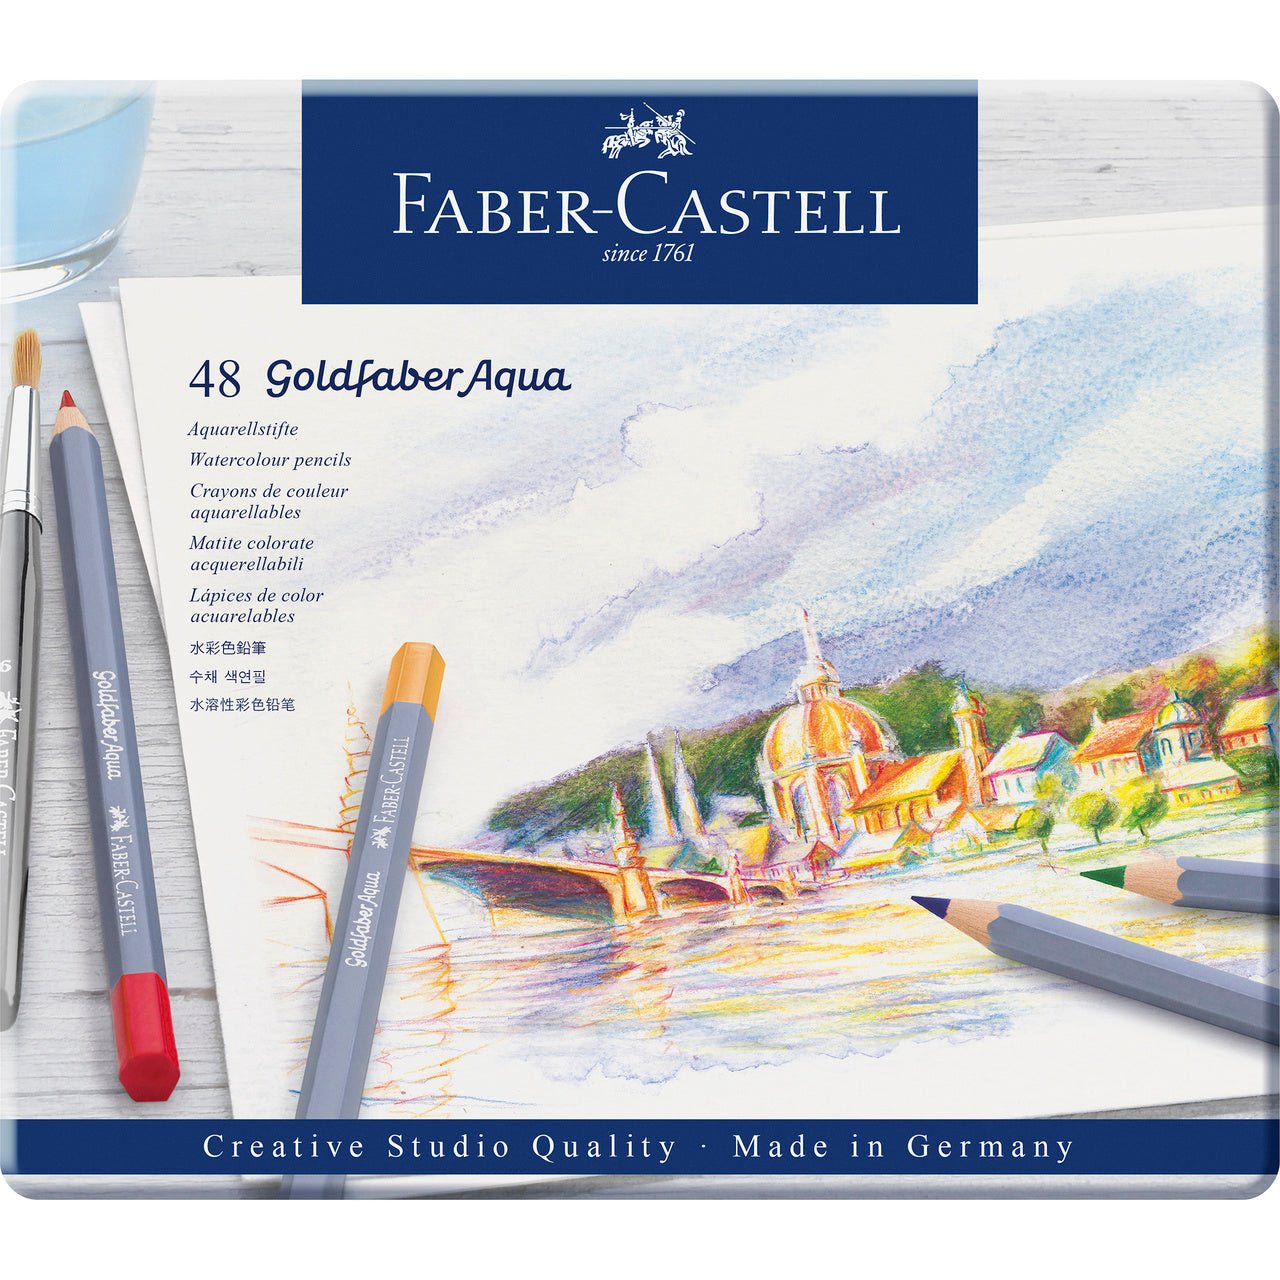 Faber-Castell Goldfaber Aqua Pencil 48 Color Set in Metal Tin - merriartist.com